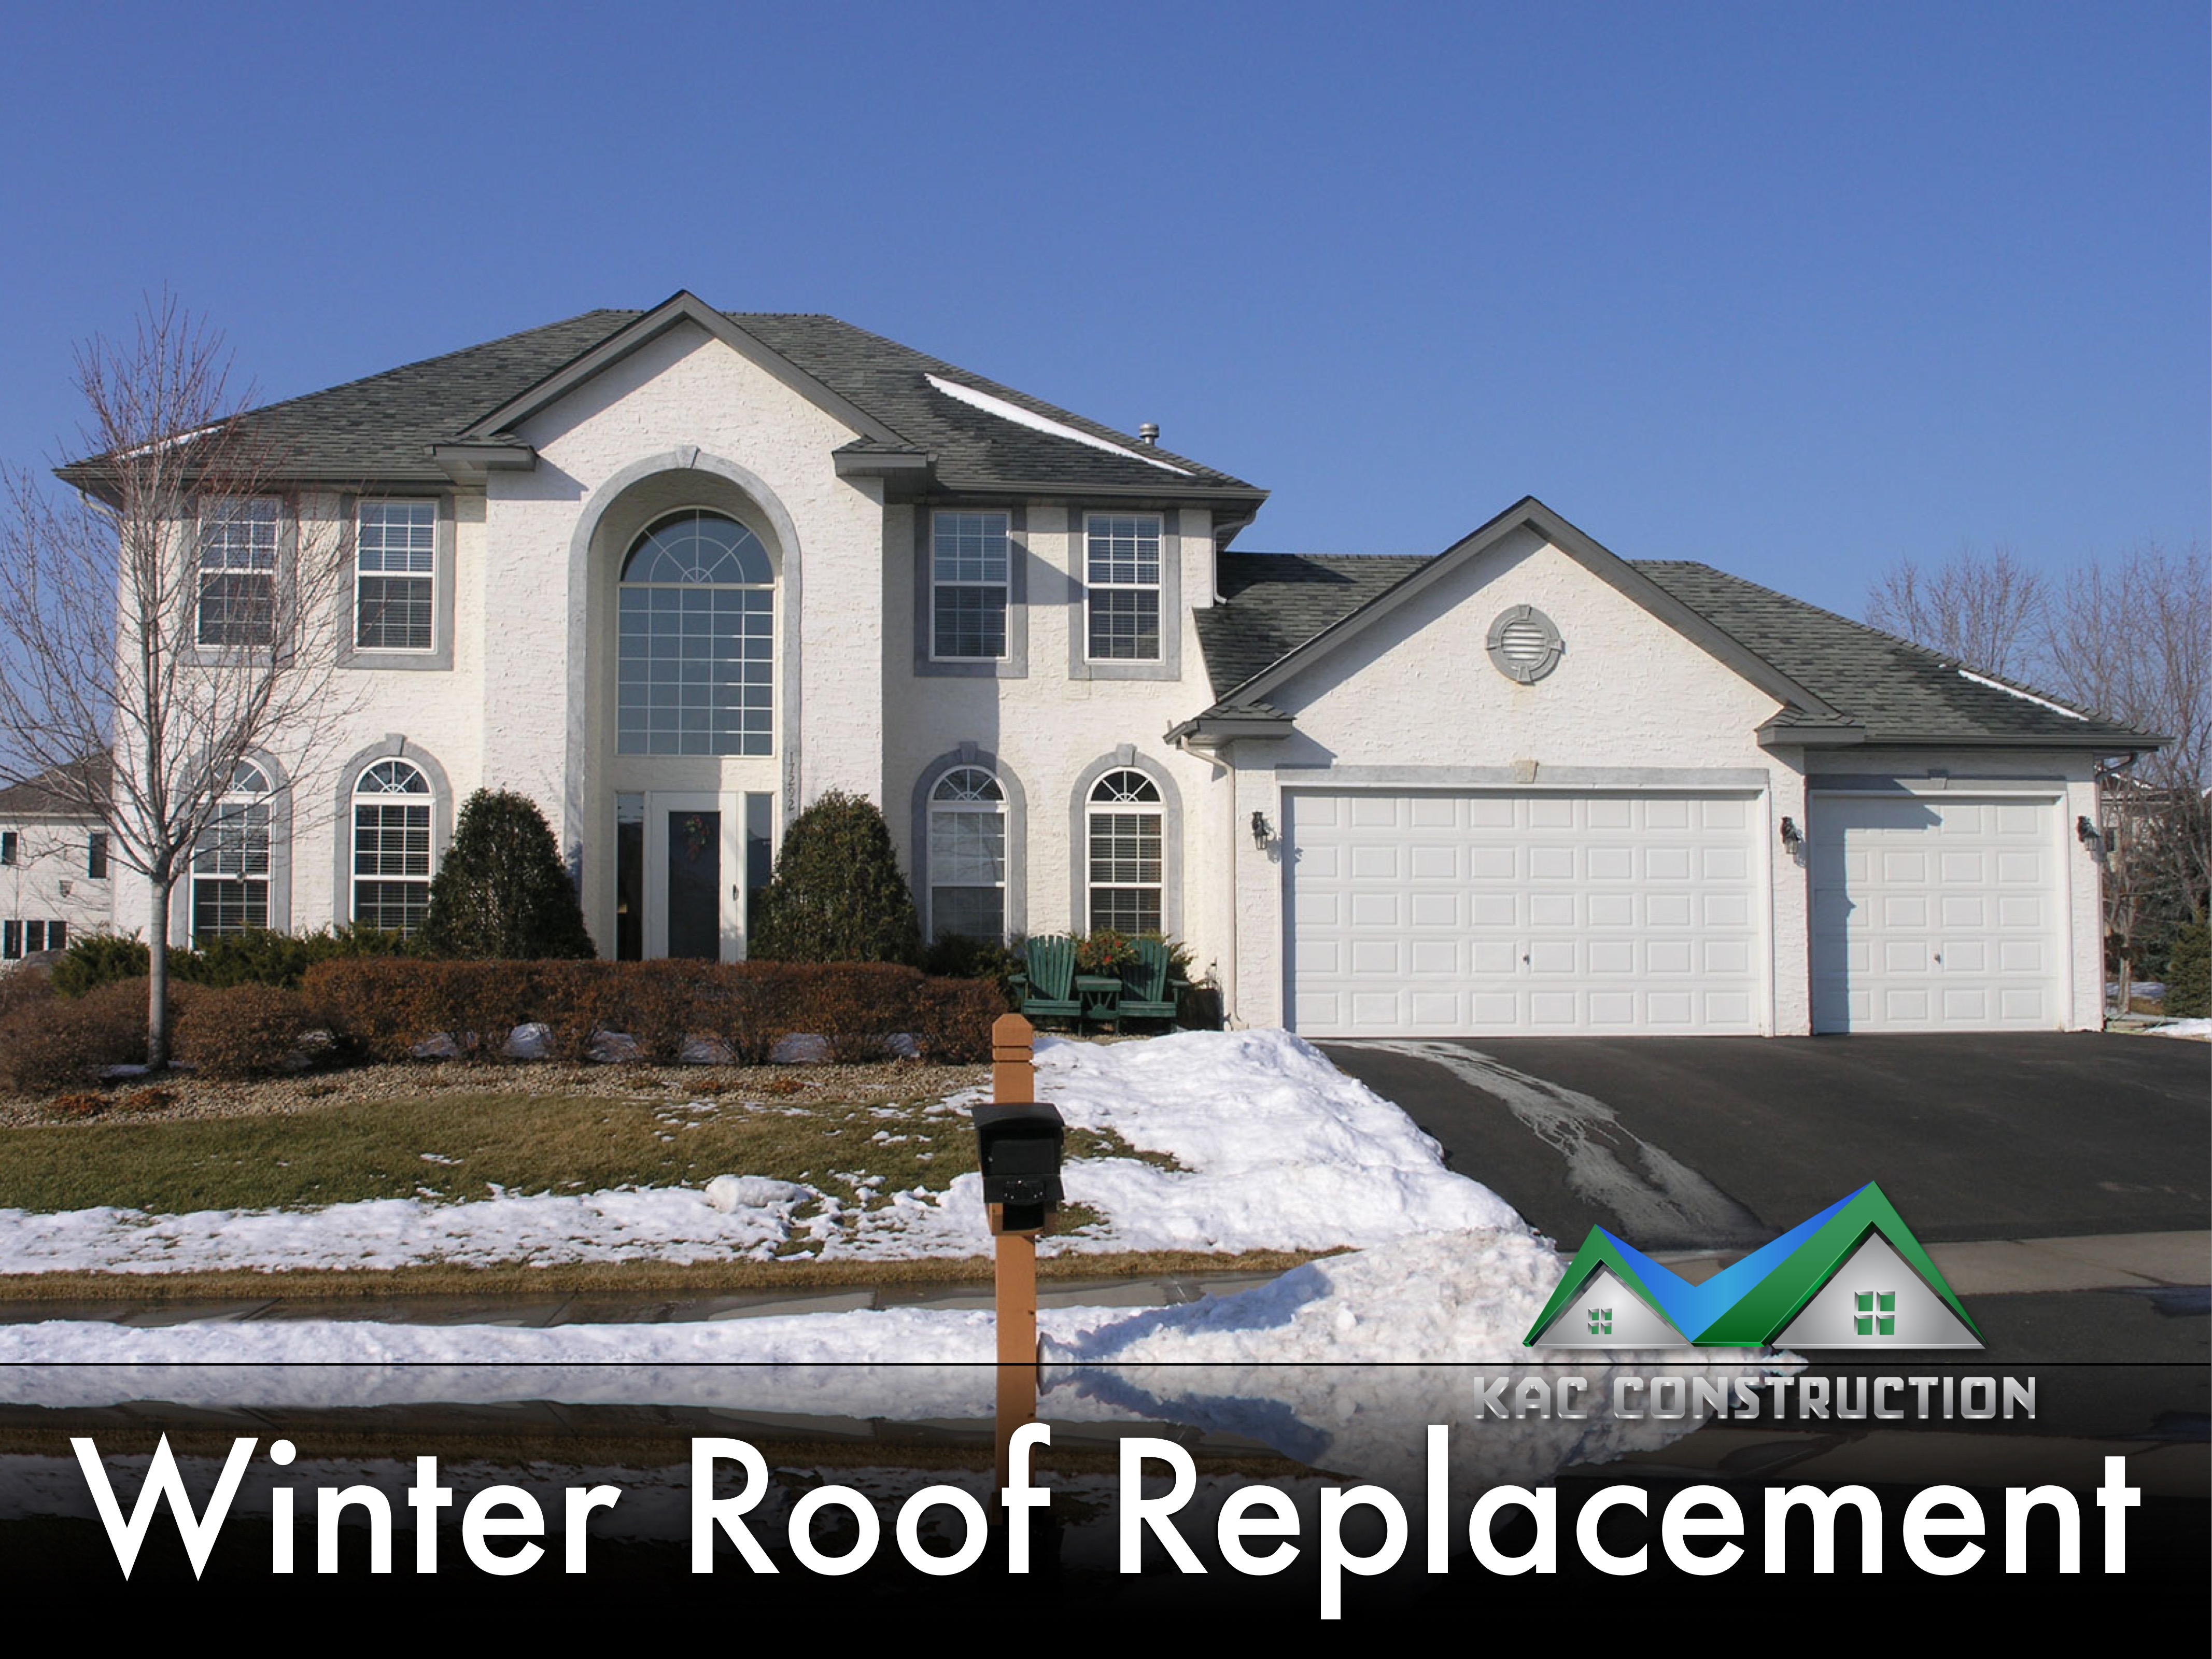 WINTER roof replacement, WINTER roof replacement ri, WINTER roof replacement in ri, roof replacement ri, roof replacement in ri